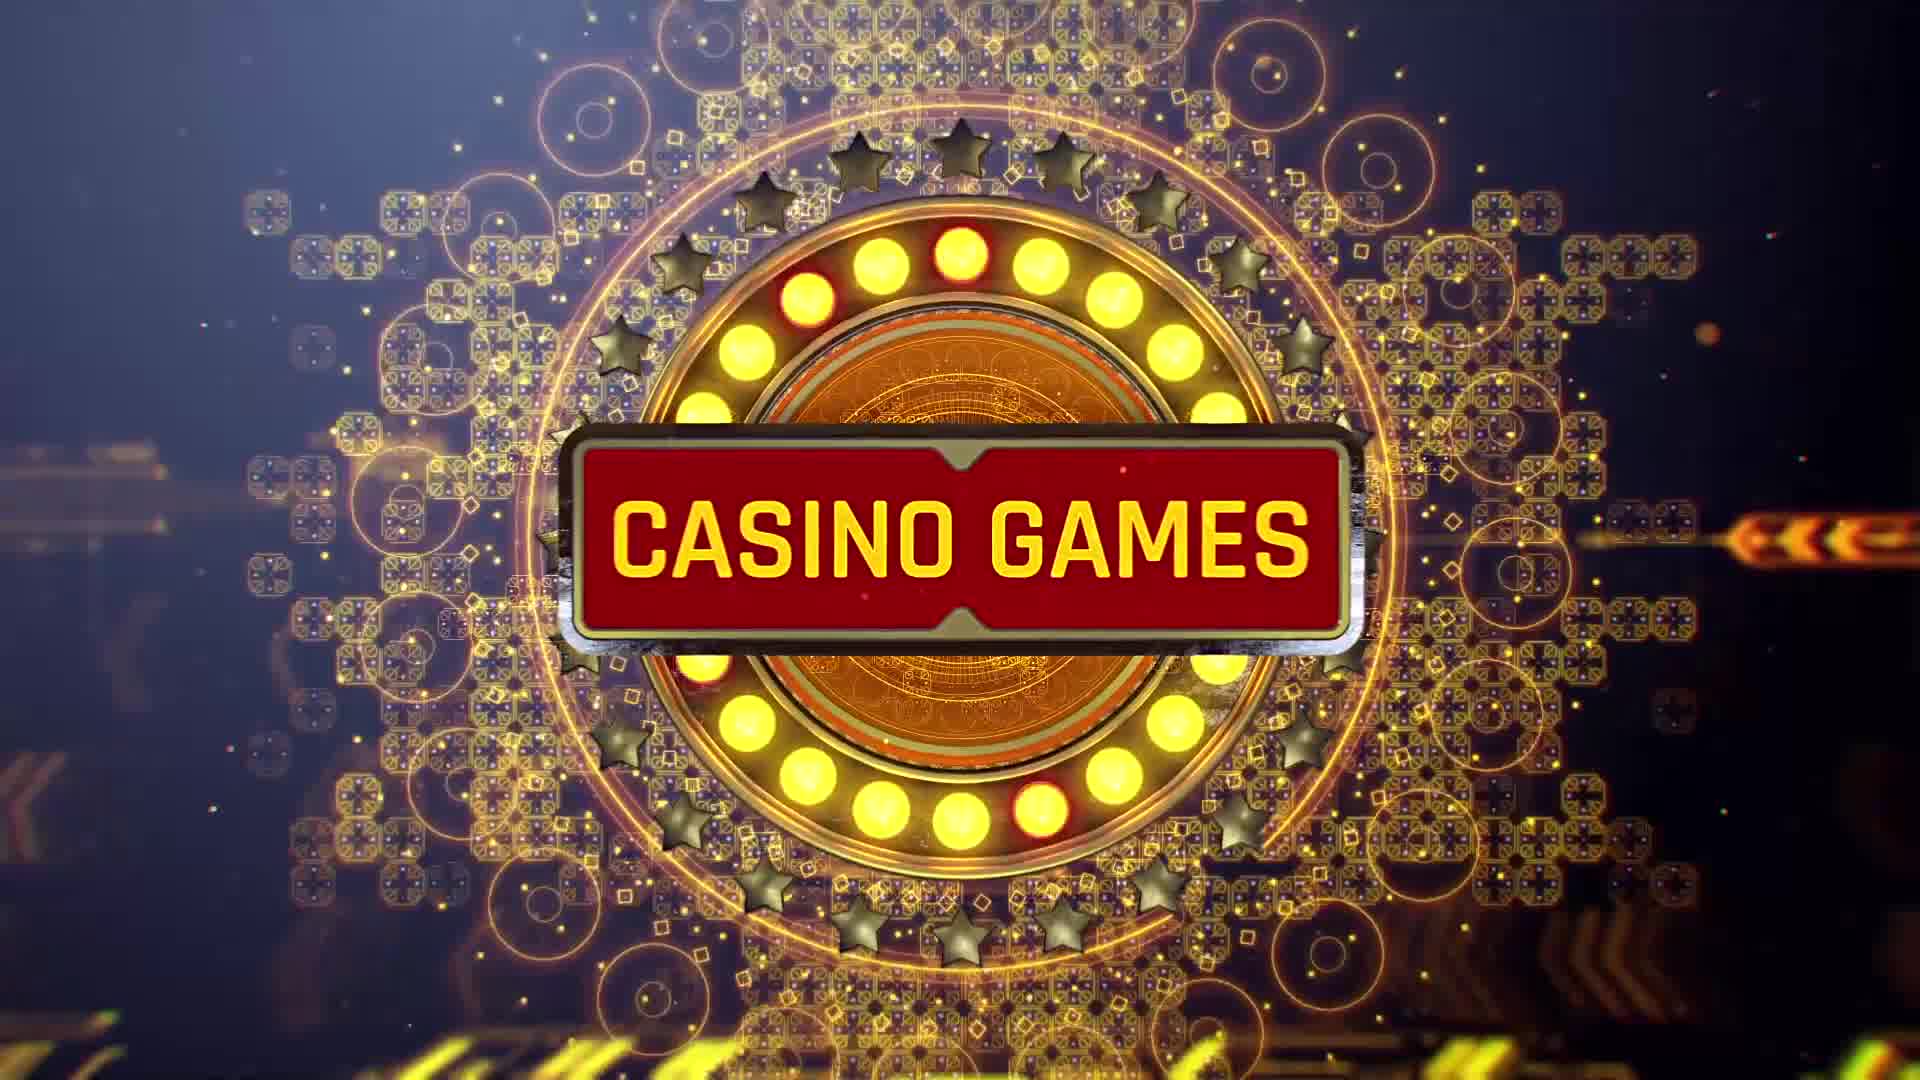 10 top online casino